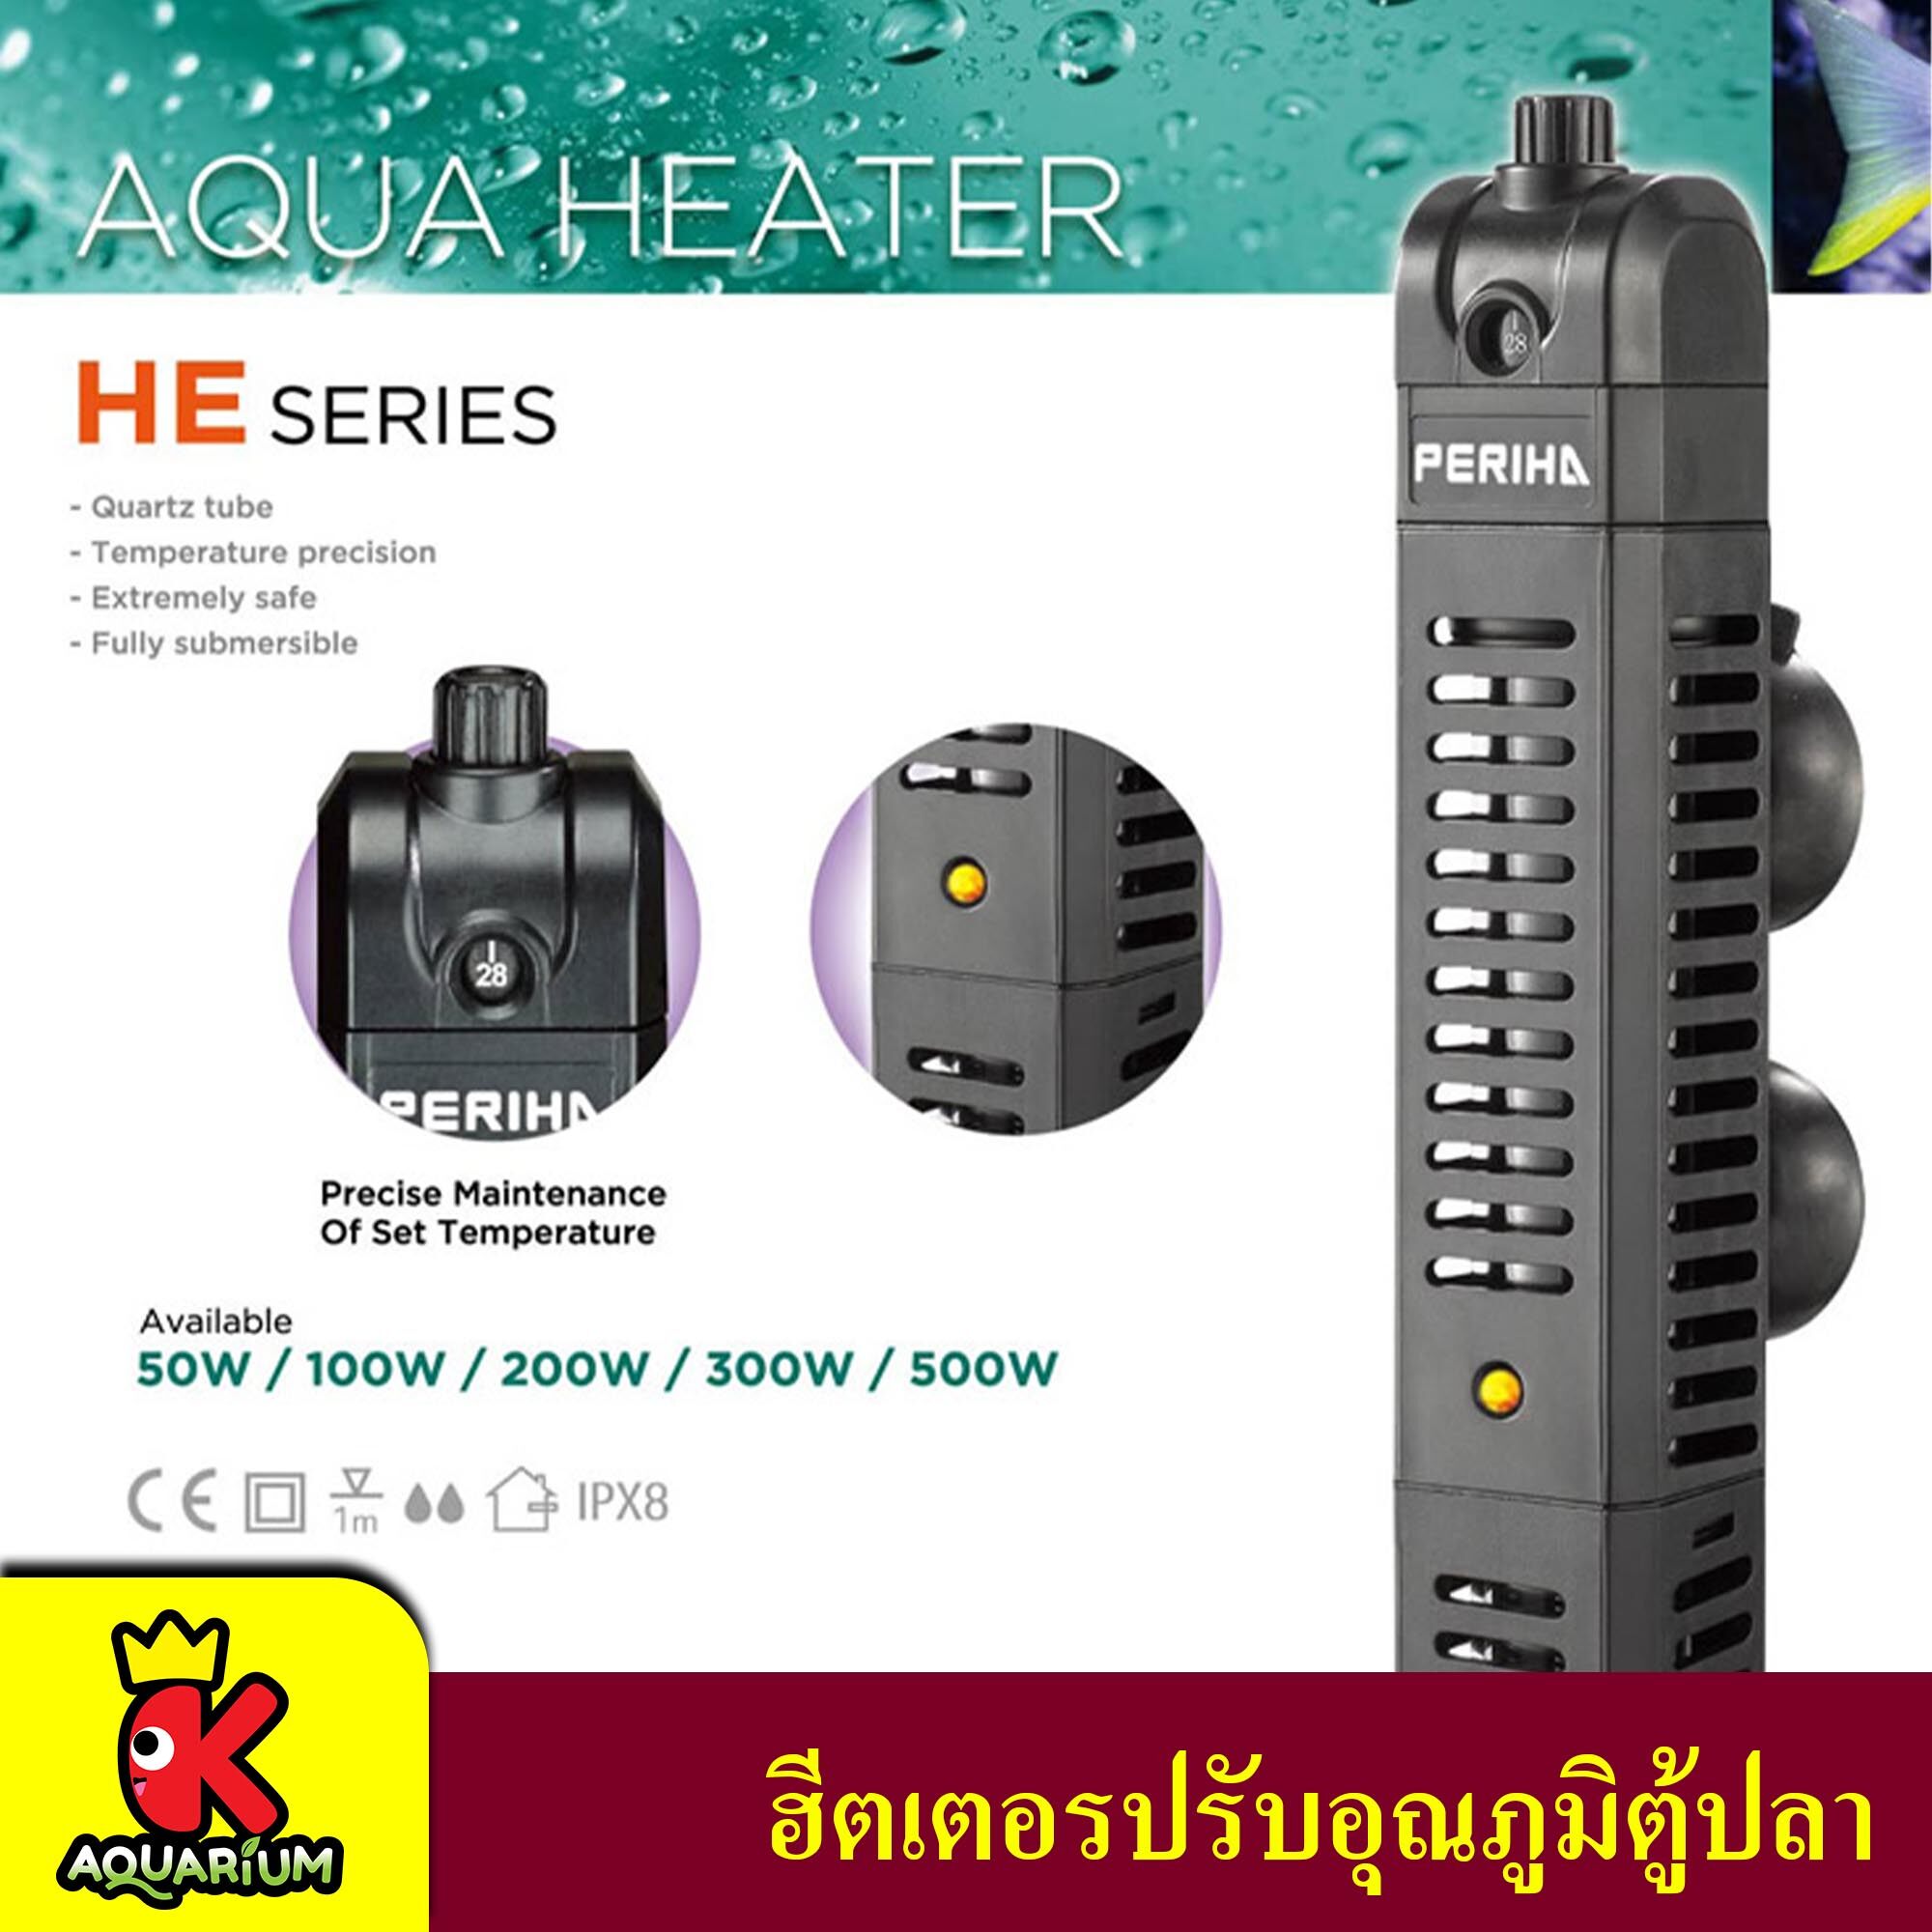 Periha HE Series ฮีตเตอร์ทำความร้อน พร้อมปลอกกันกระแทก เพื่อควบคุมอุณหภูมิ ป้องกัน และรักษาปลาป่วย ในช่วงอากาศเย็น ( HE-50 / HE-100 / HE-200 / HE-300 / HE-500 )